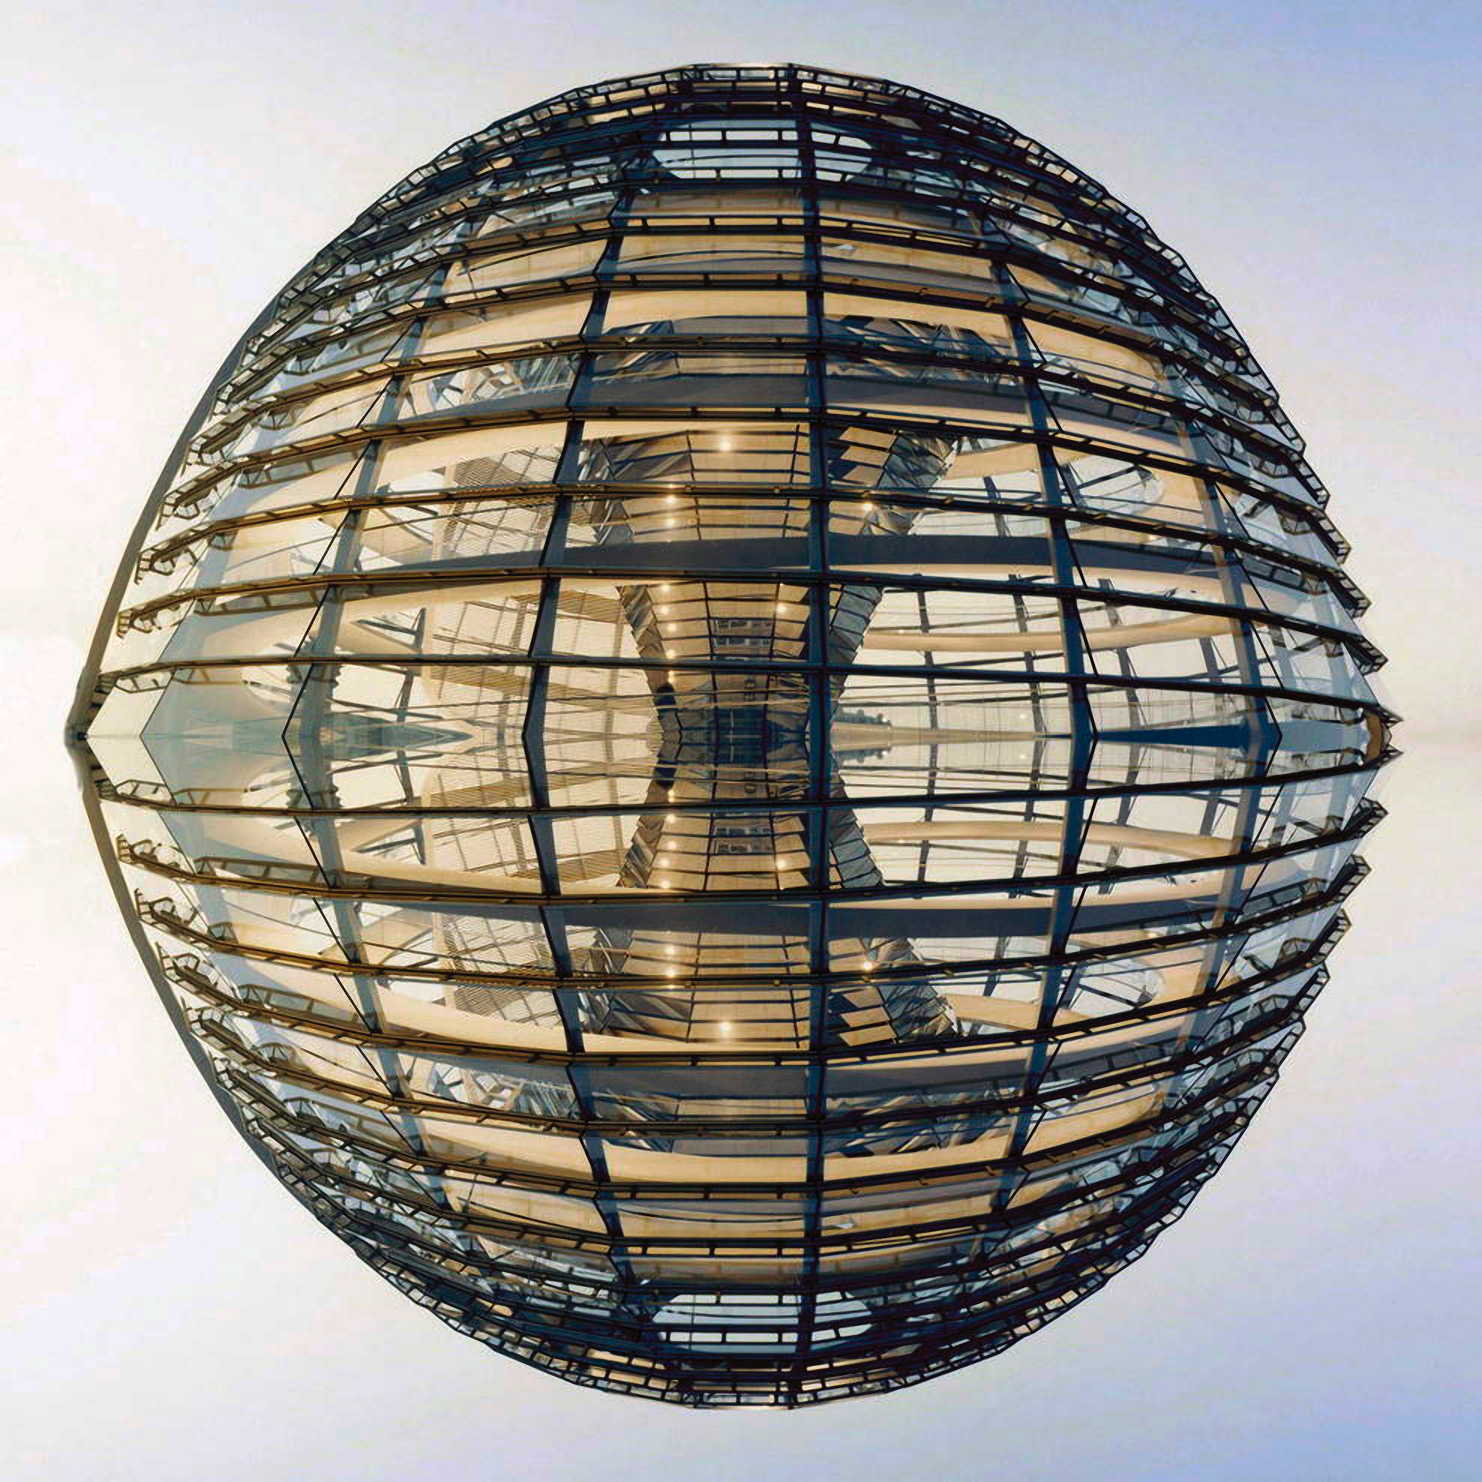 Reichstagskuppel Reichstagskugel Reichskristallkugel Berlin Bundestag Reichstag Edel-Kabarett an der Spree qpress Zankapfel Palast Neo Ballast der Republik